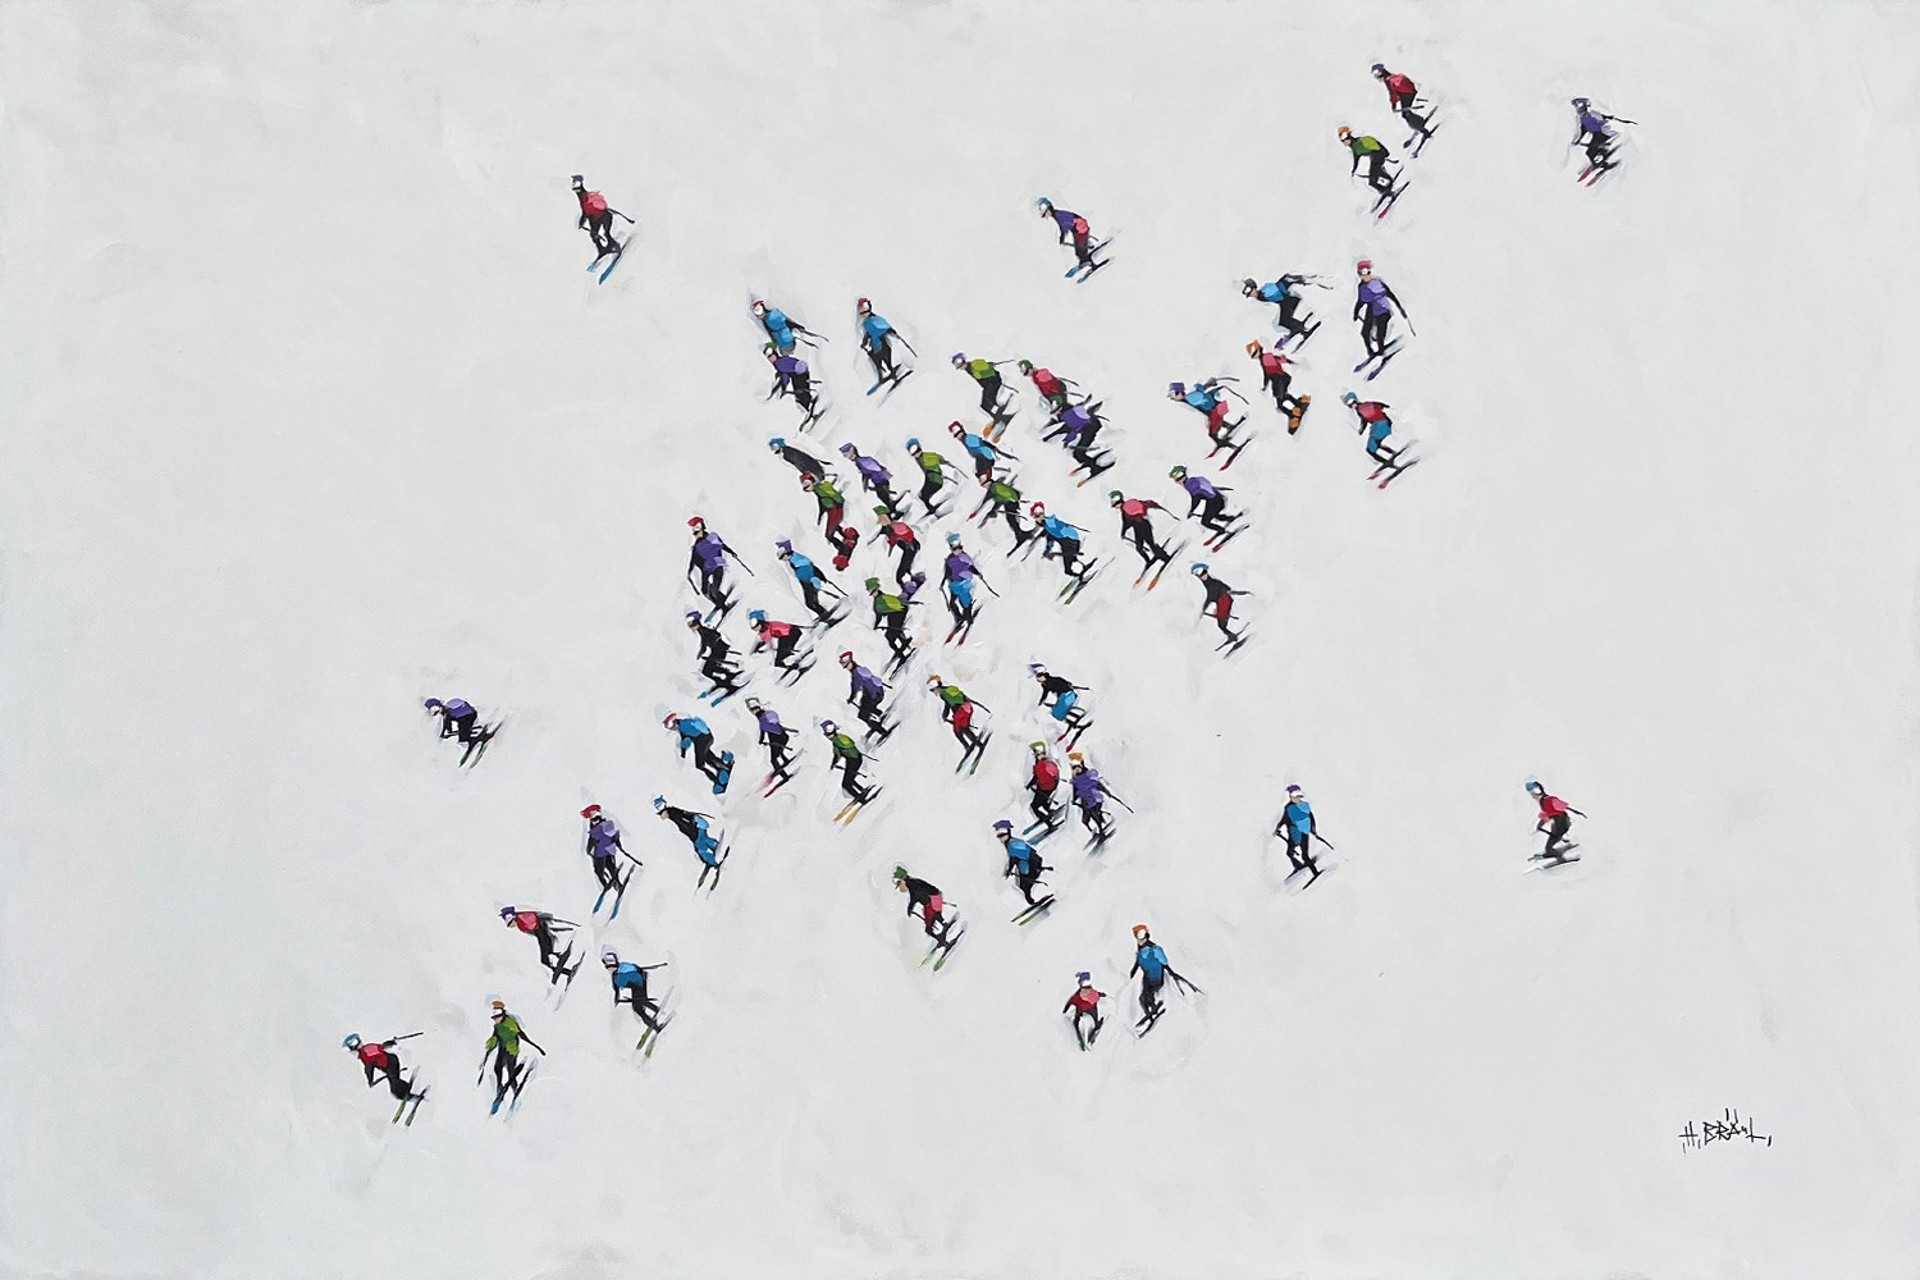 Skiers 190844 by Harold Braul